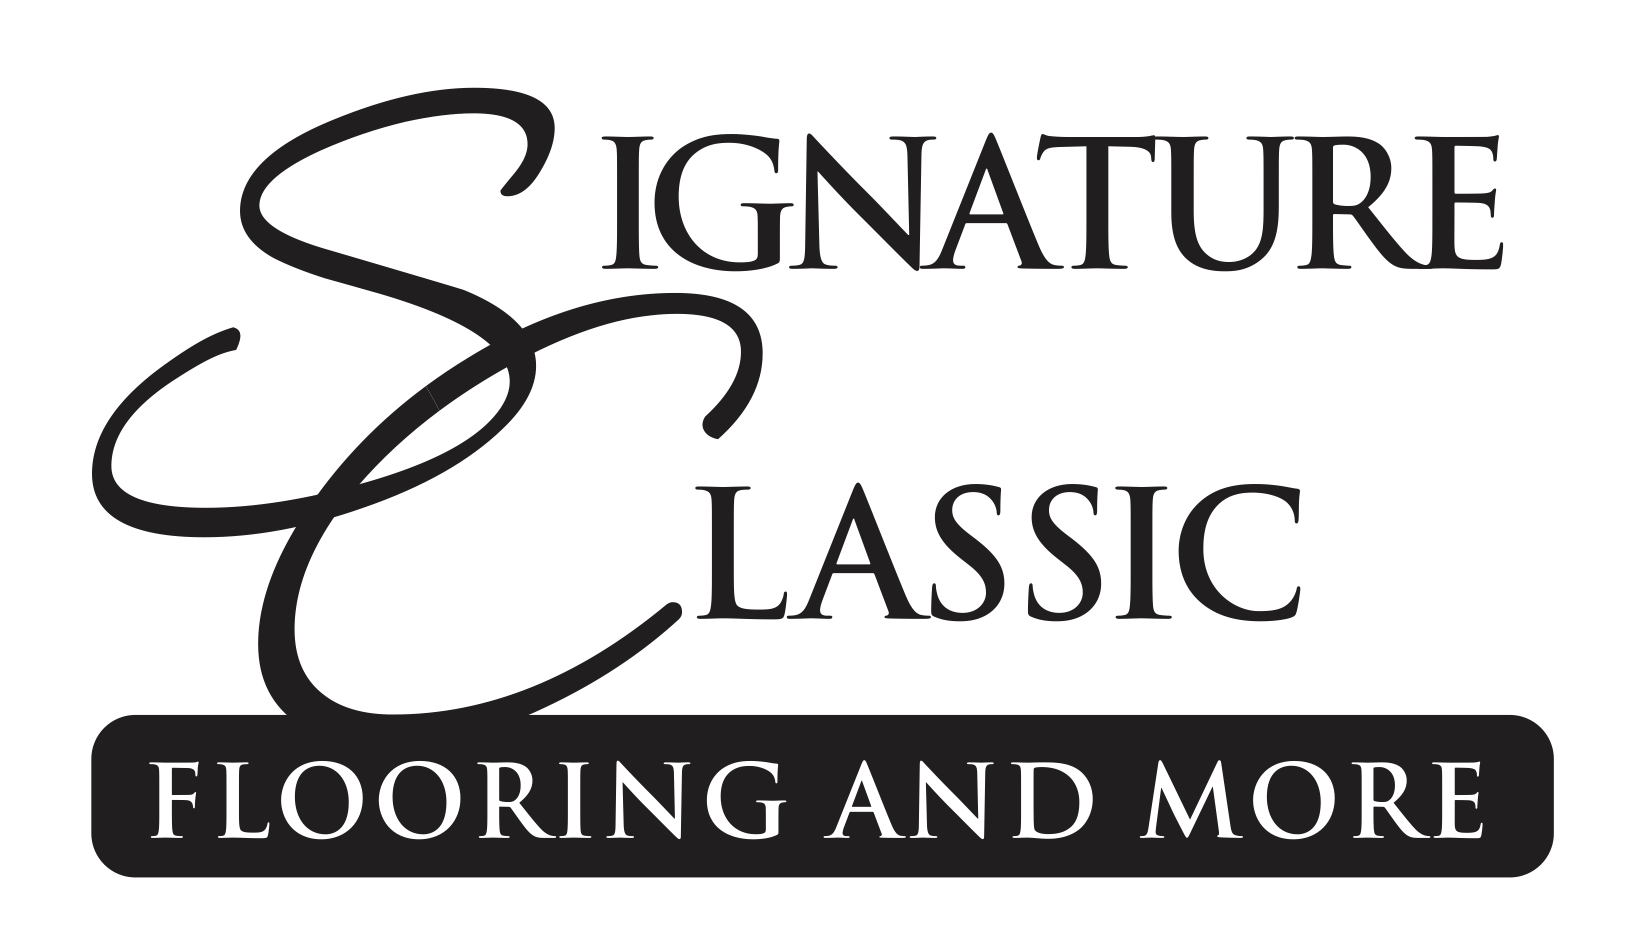 Signature Classic Flooring and More